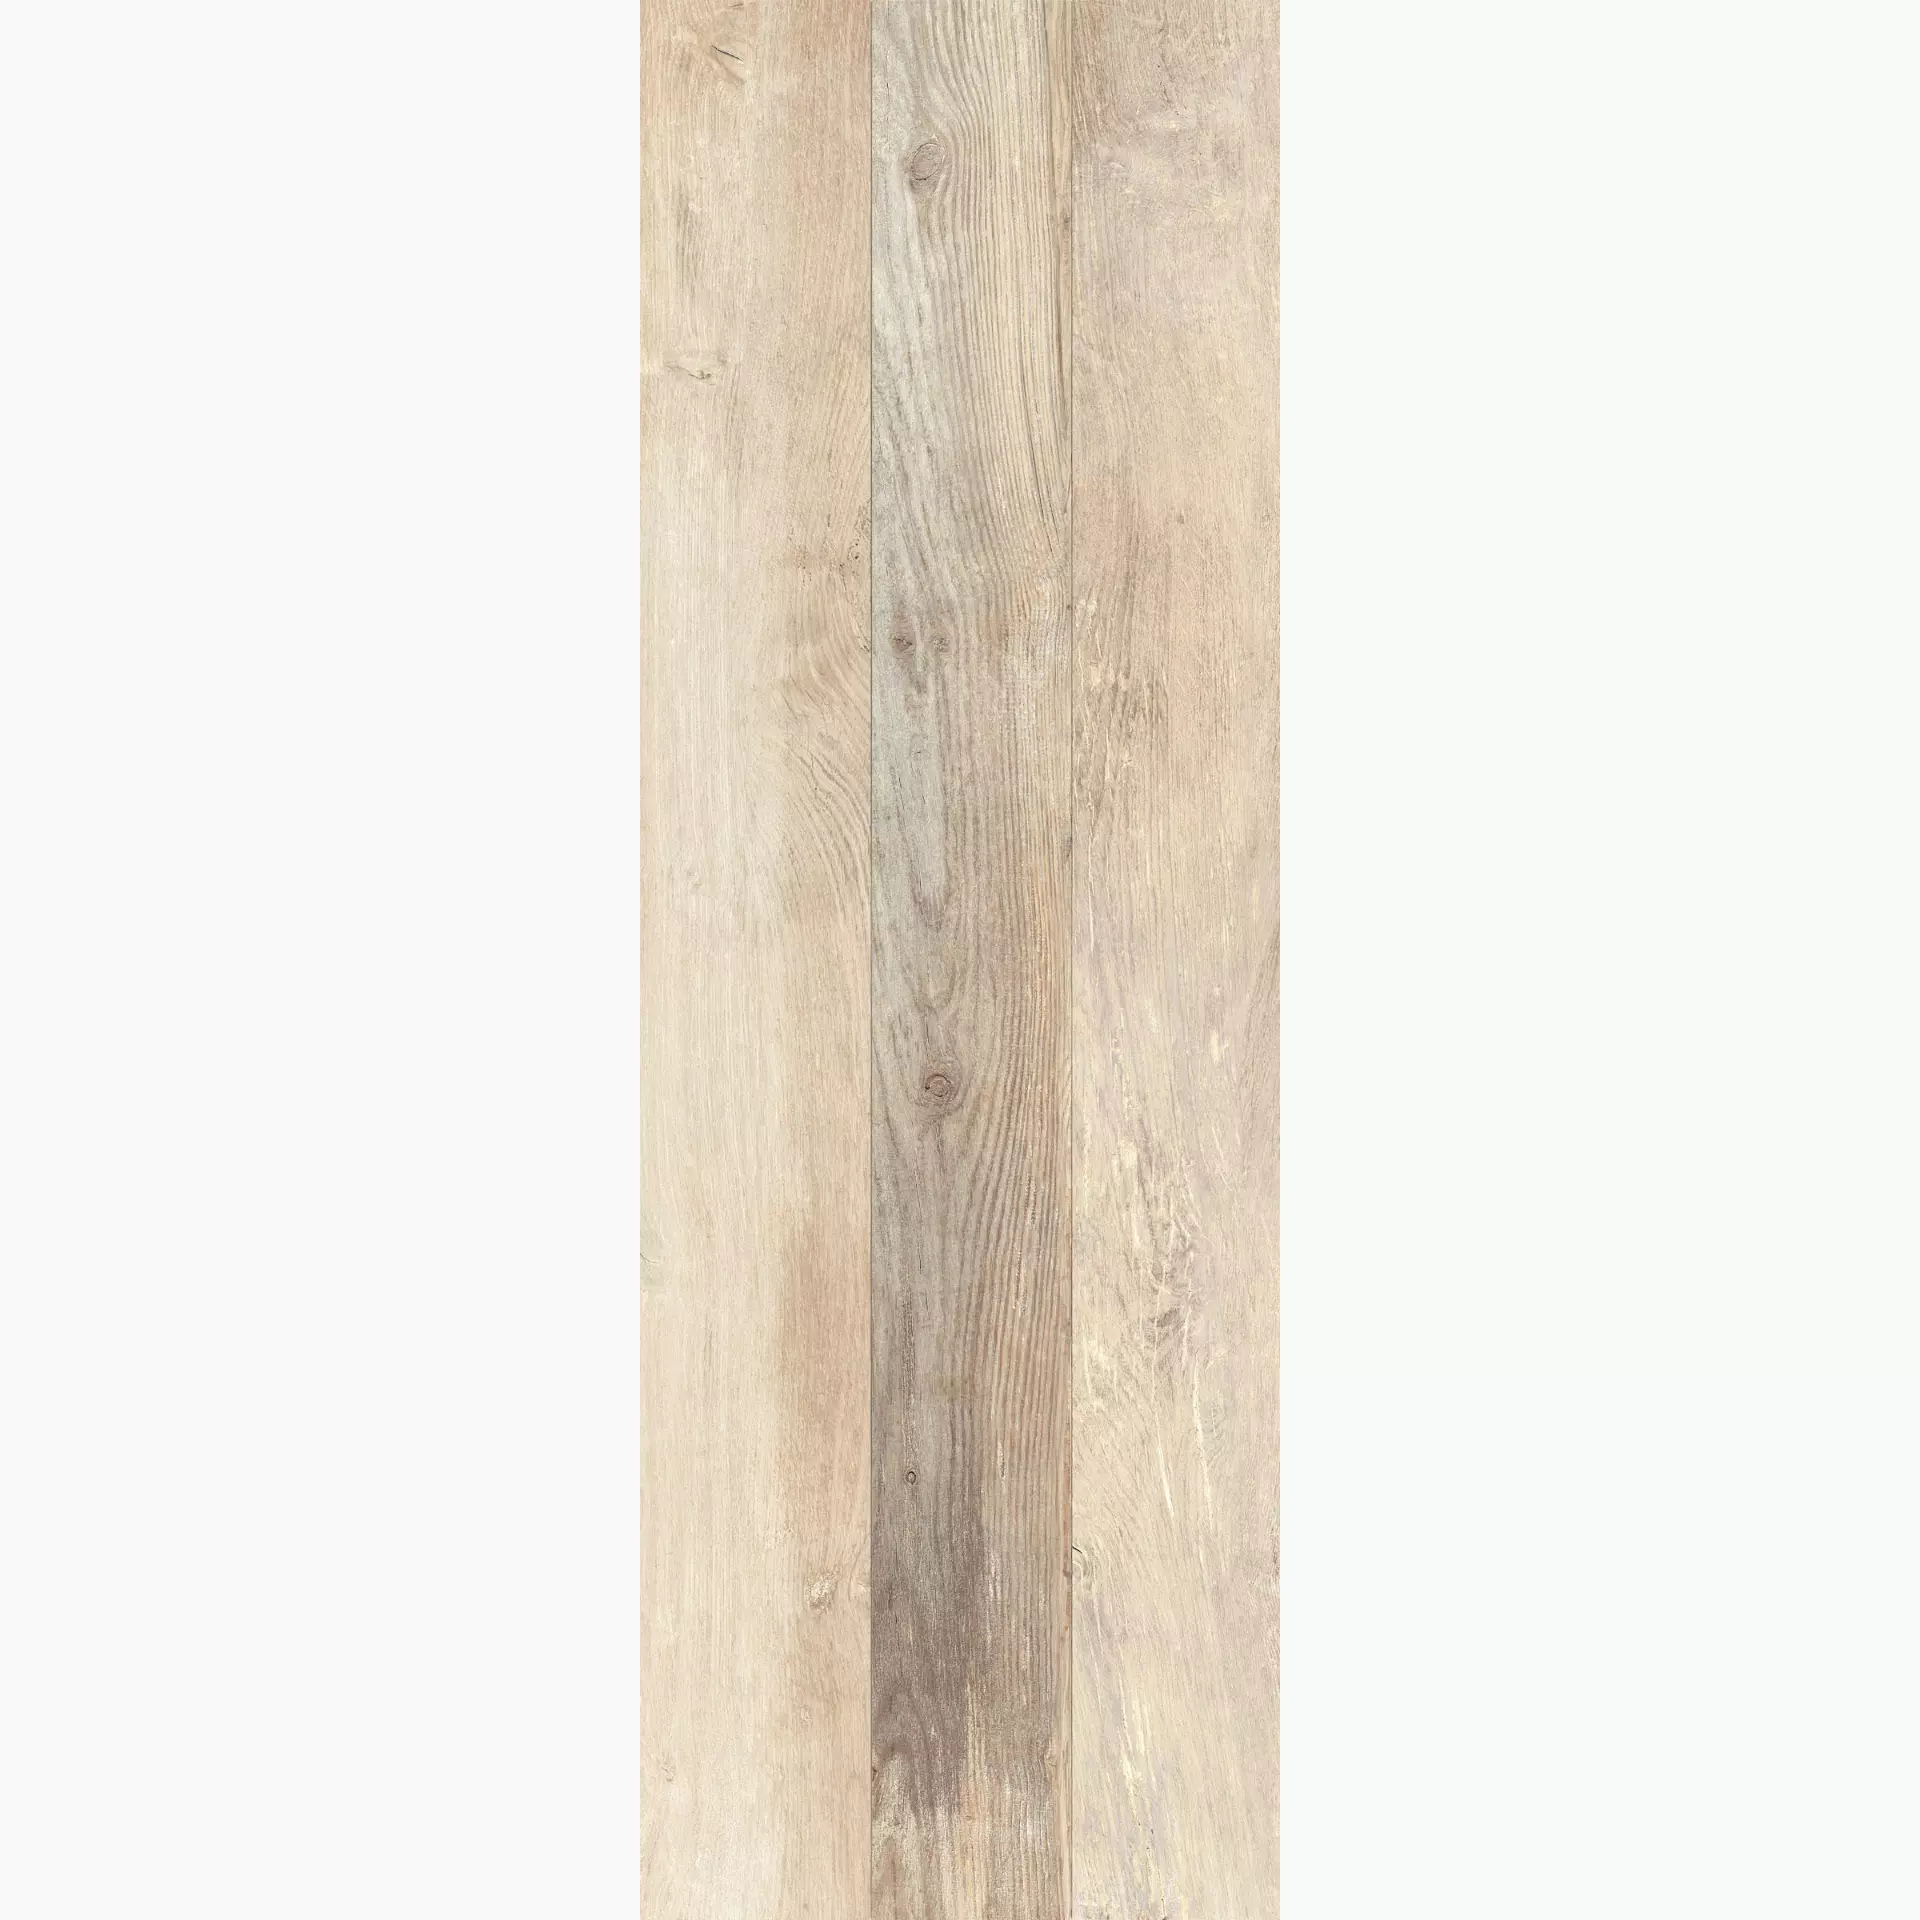 KRONOS Woodside Oak Grip Decor Doga 2.0 6651 40x120cm rectified 20mm